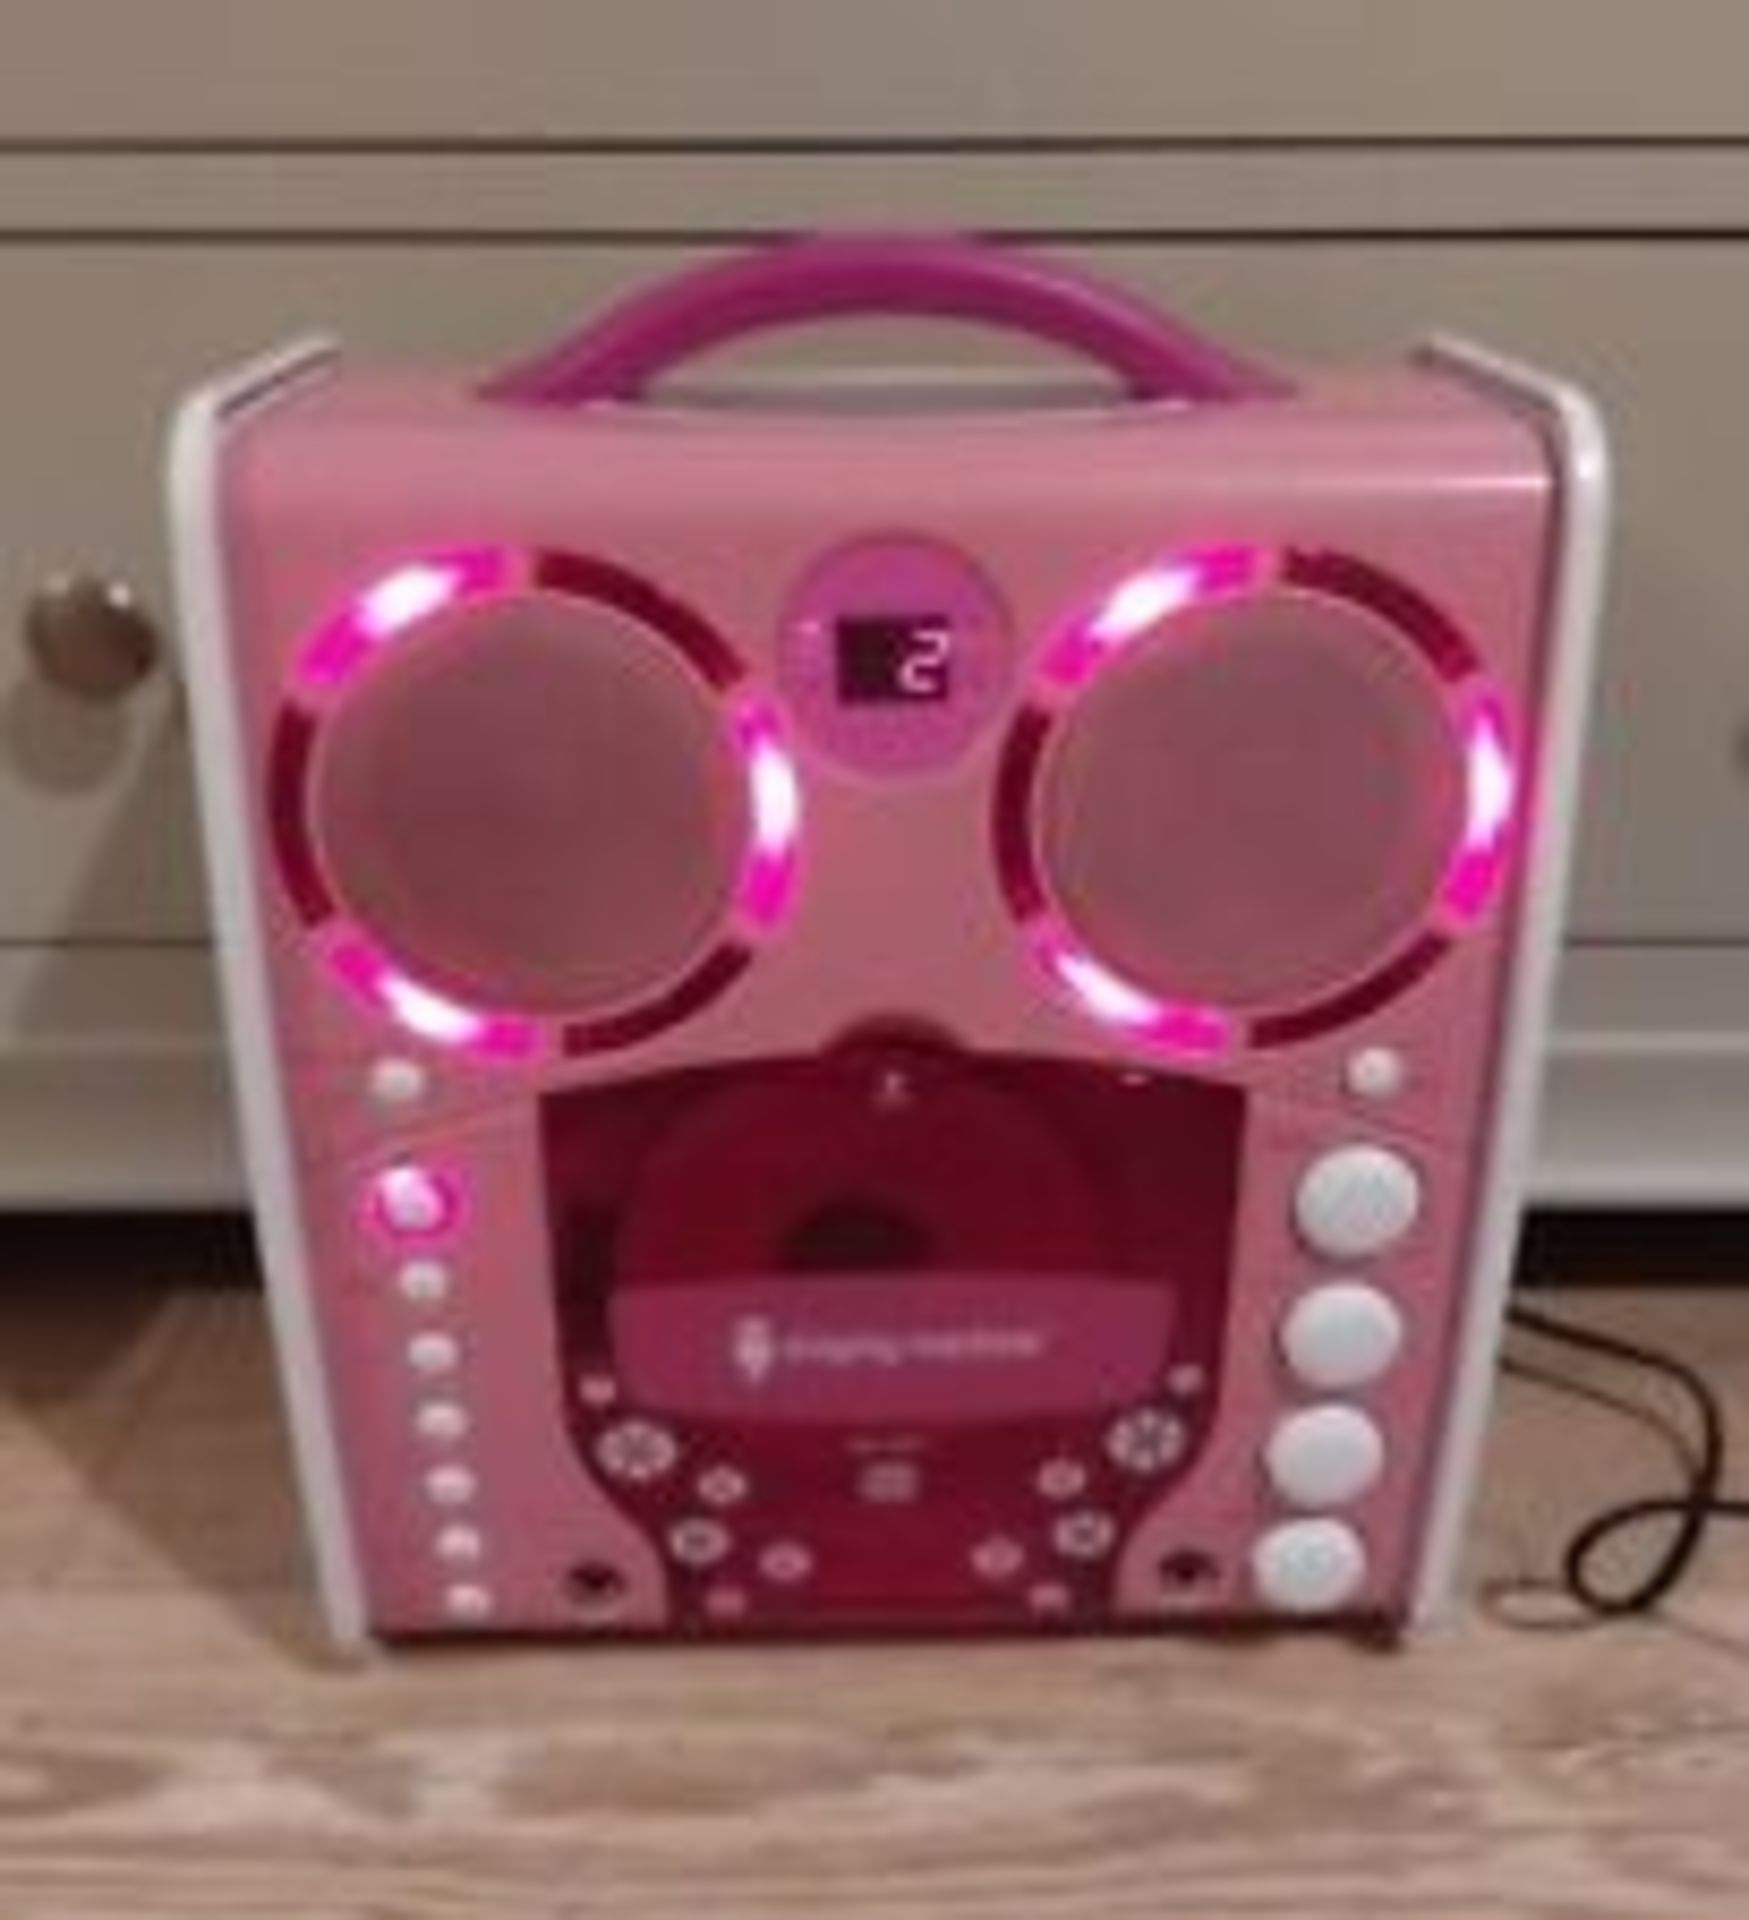 Bundle of 2x Singing Machine SML-383 Portable CD-G Karaoke Player Pink - ER21